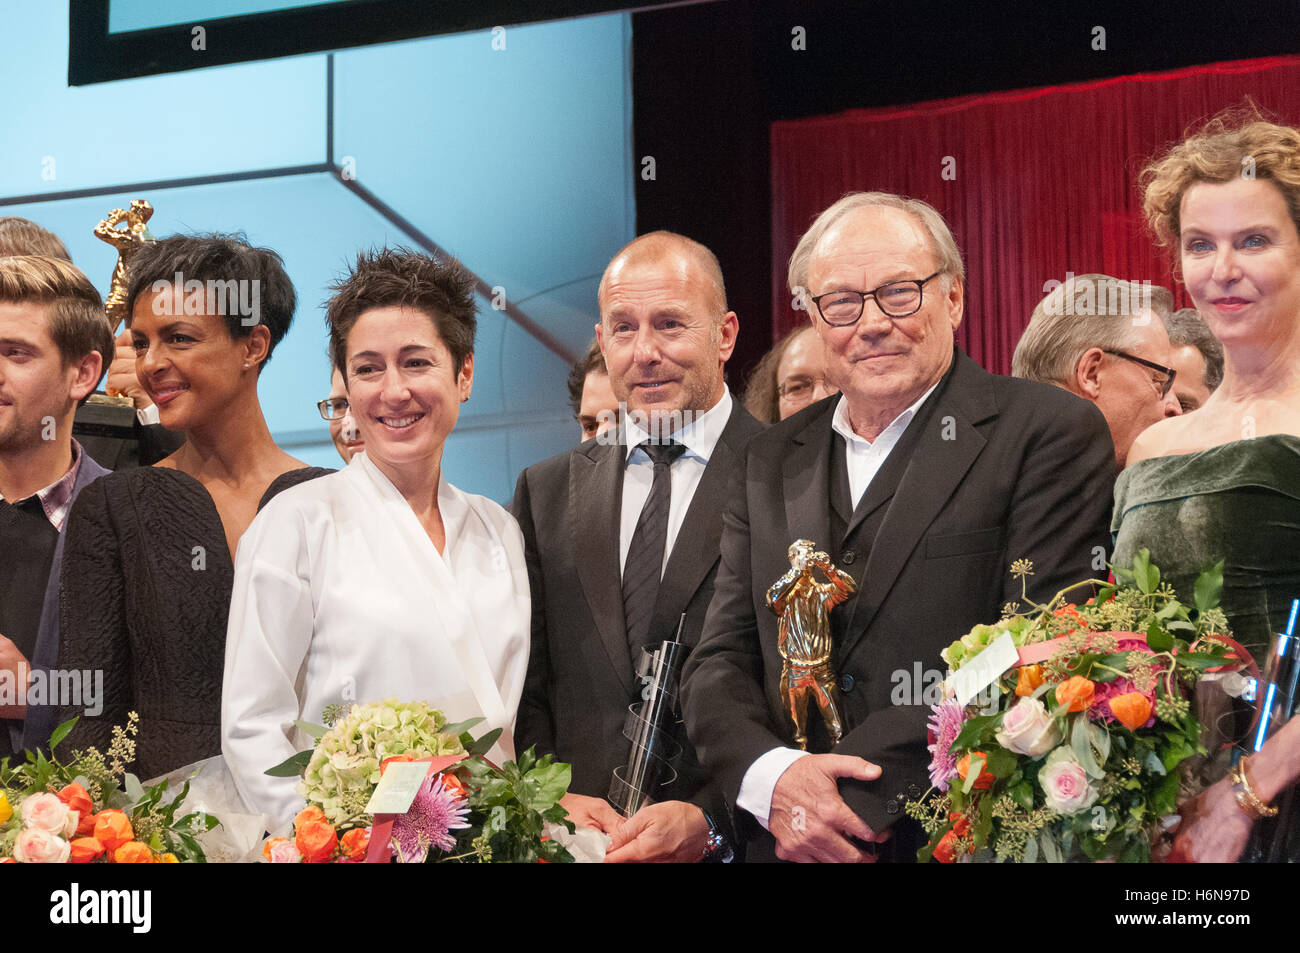 Dennenesch Zoude, Dunja Hayali, Heino Ferch, Klaus Maria Brandauer, Margarita Broich a Hessischer Film- und Kinopreis 2016 Foto Stock